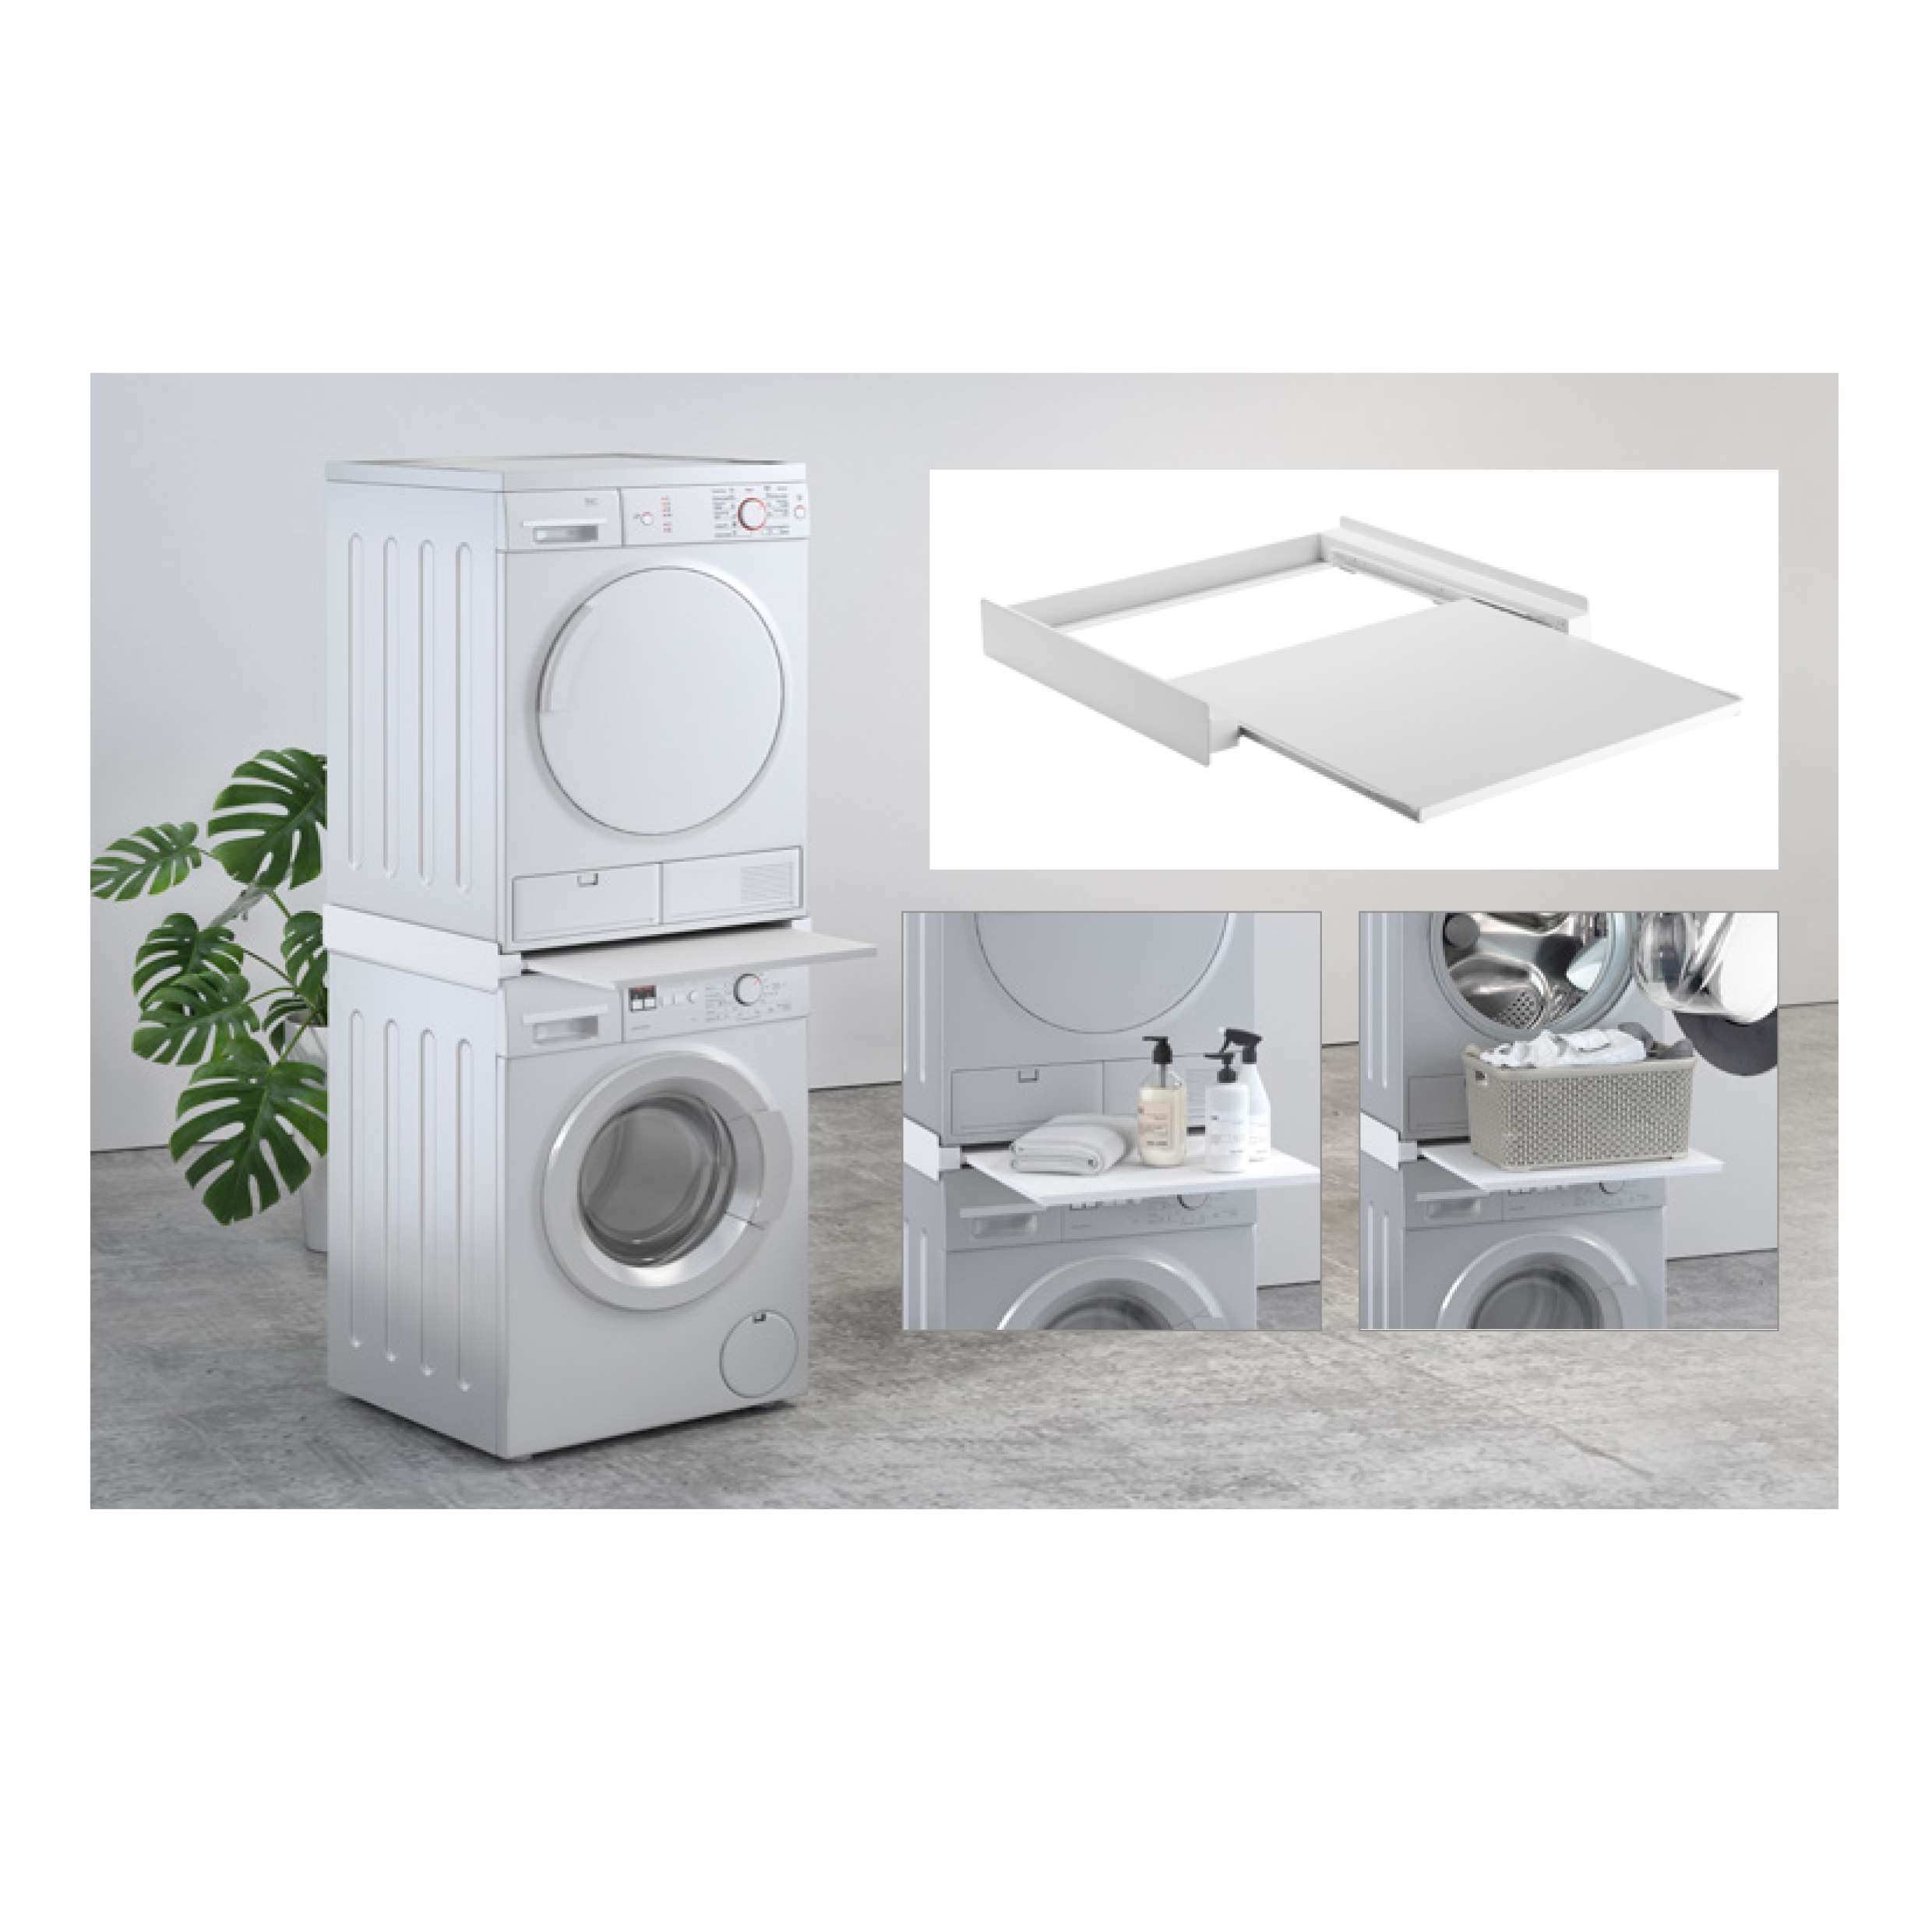 SUPSLW001  Tower Pro: estante para lavadora y secadora apilables, con estante extraíble